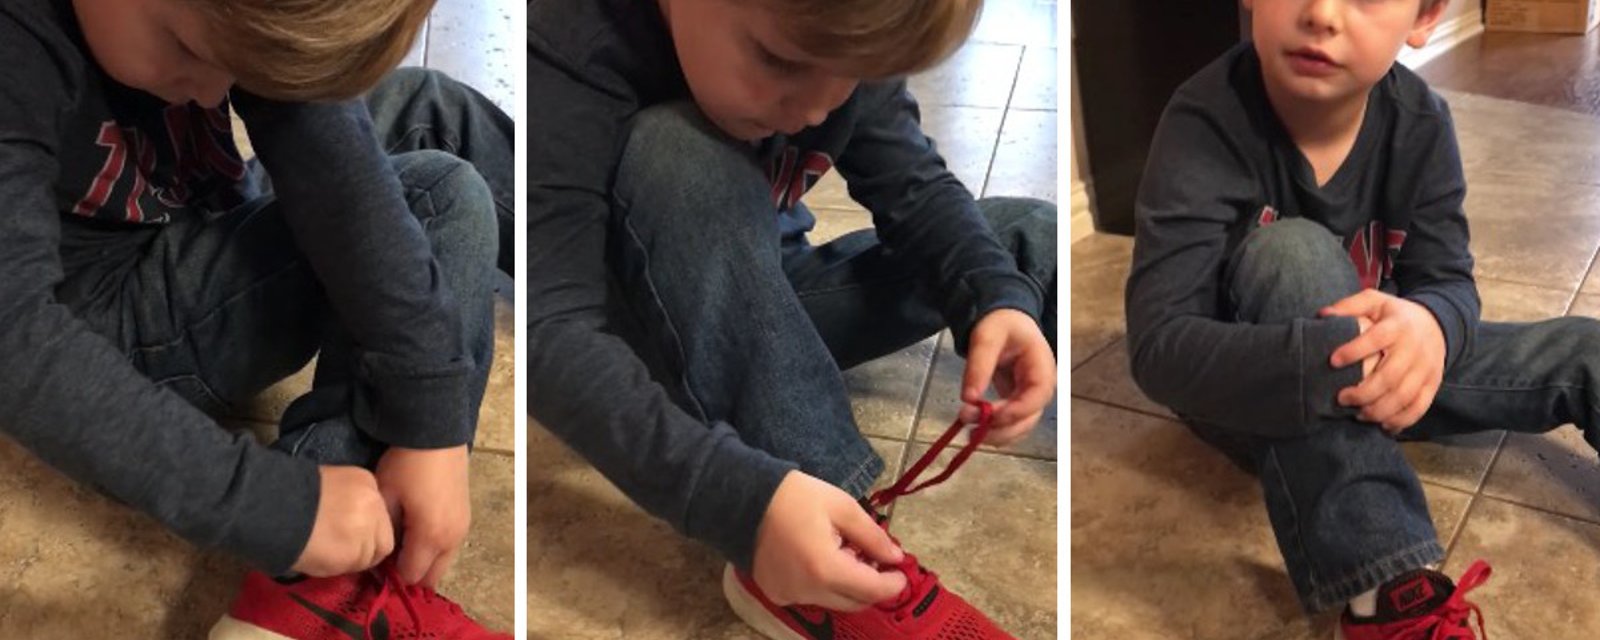 Un petit bonhomme de 5 ans rend les chaussures super faciles à attacher, d'une adorable façon! 